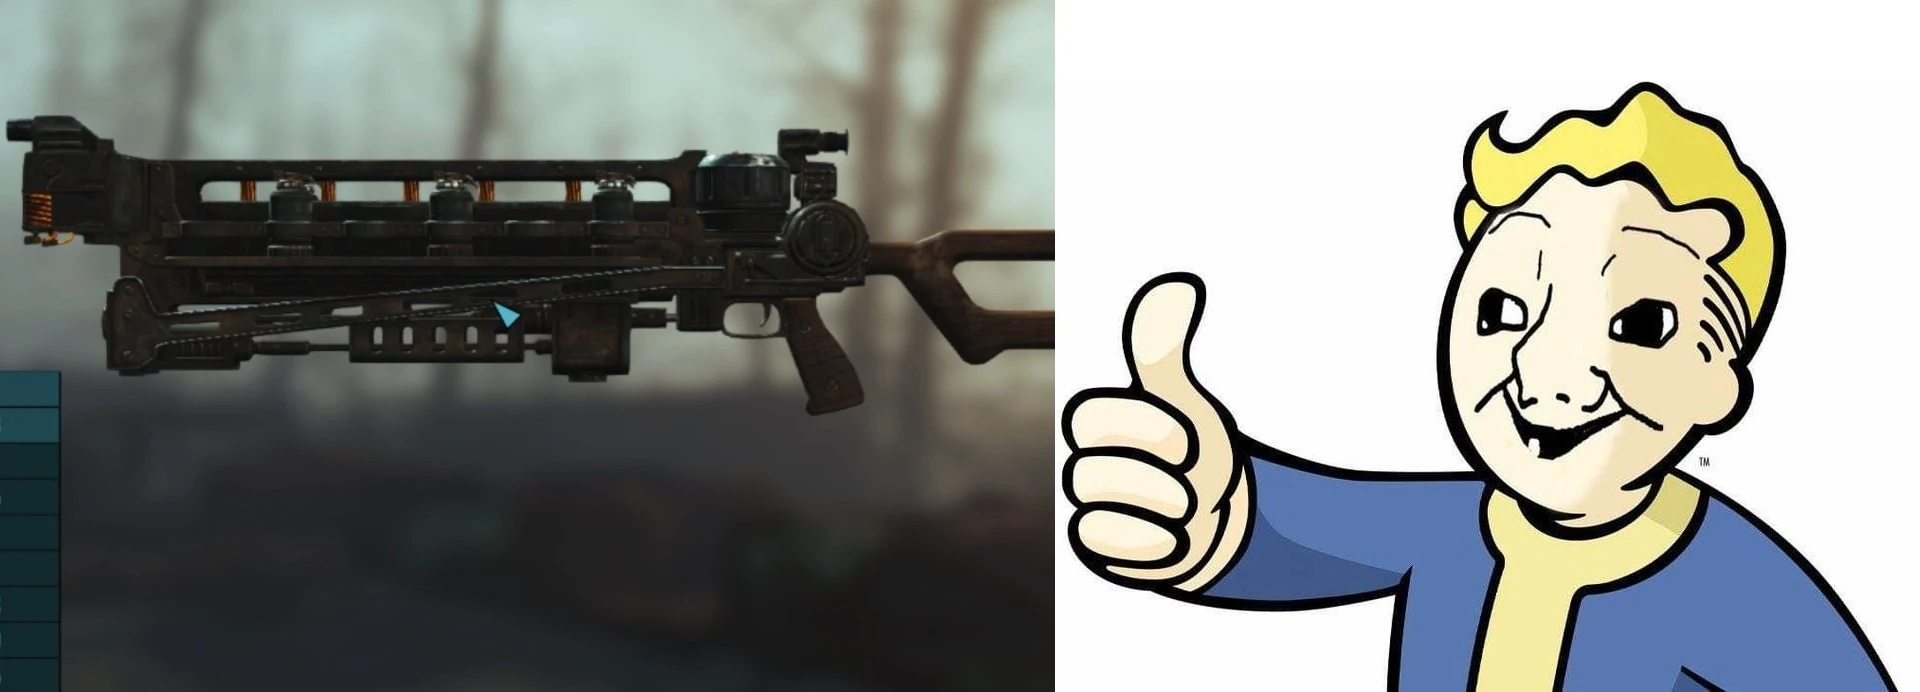 Fallout 4 gauss rifle фото 58